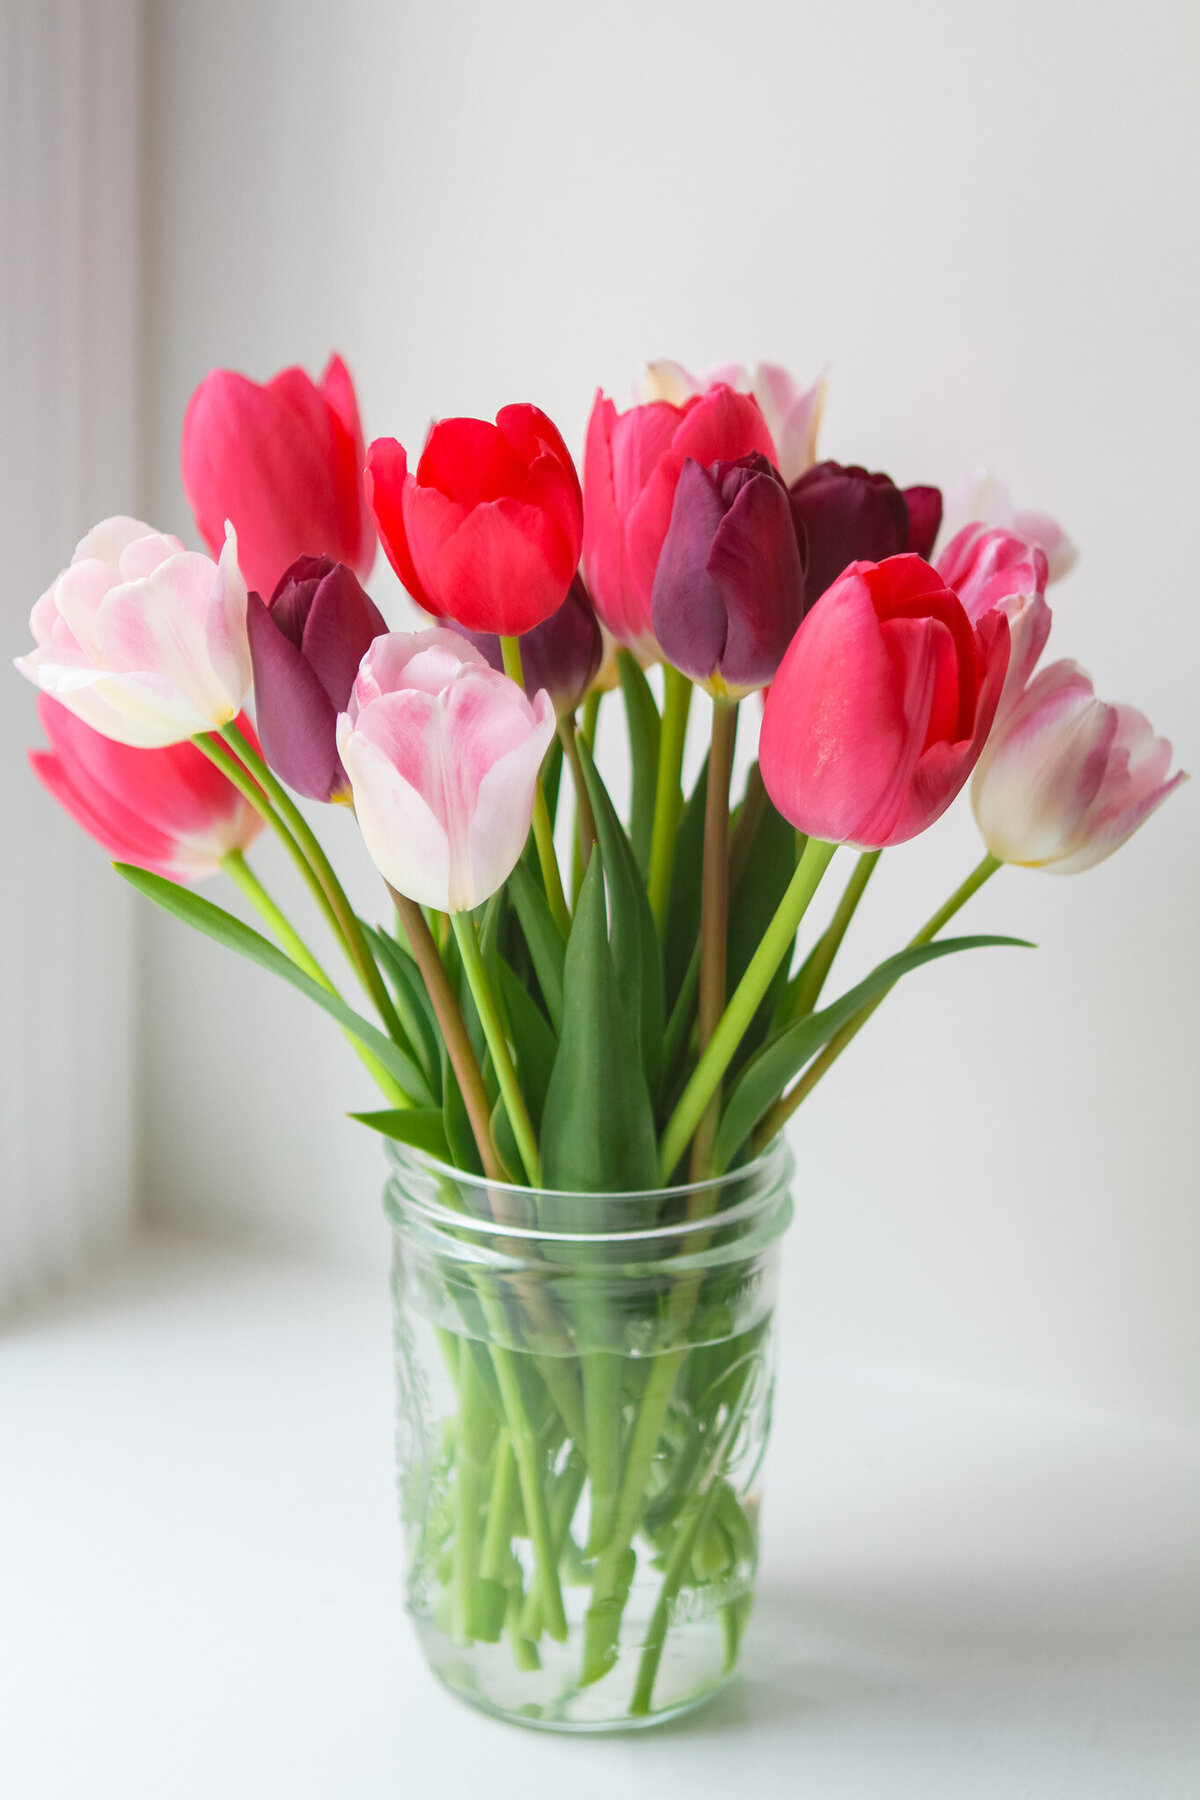 tulips-garden-flowers